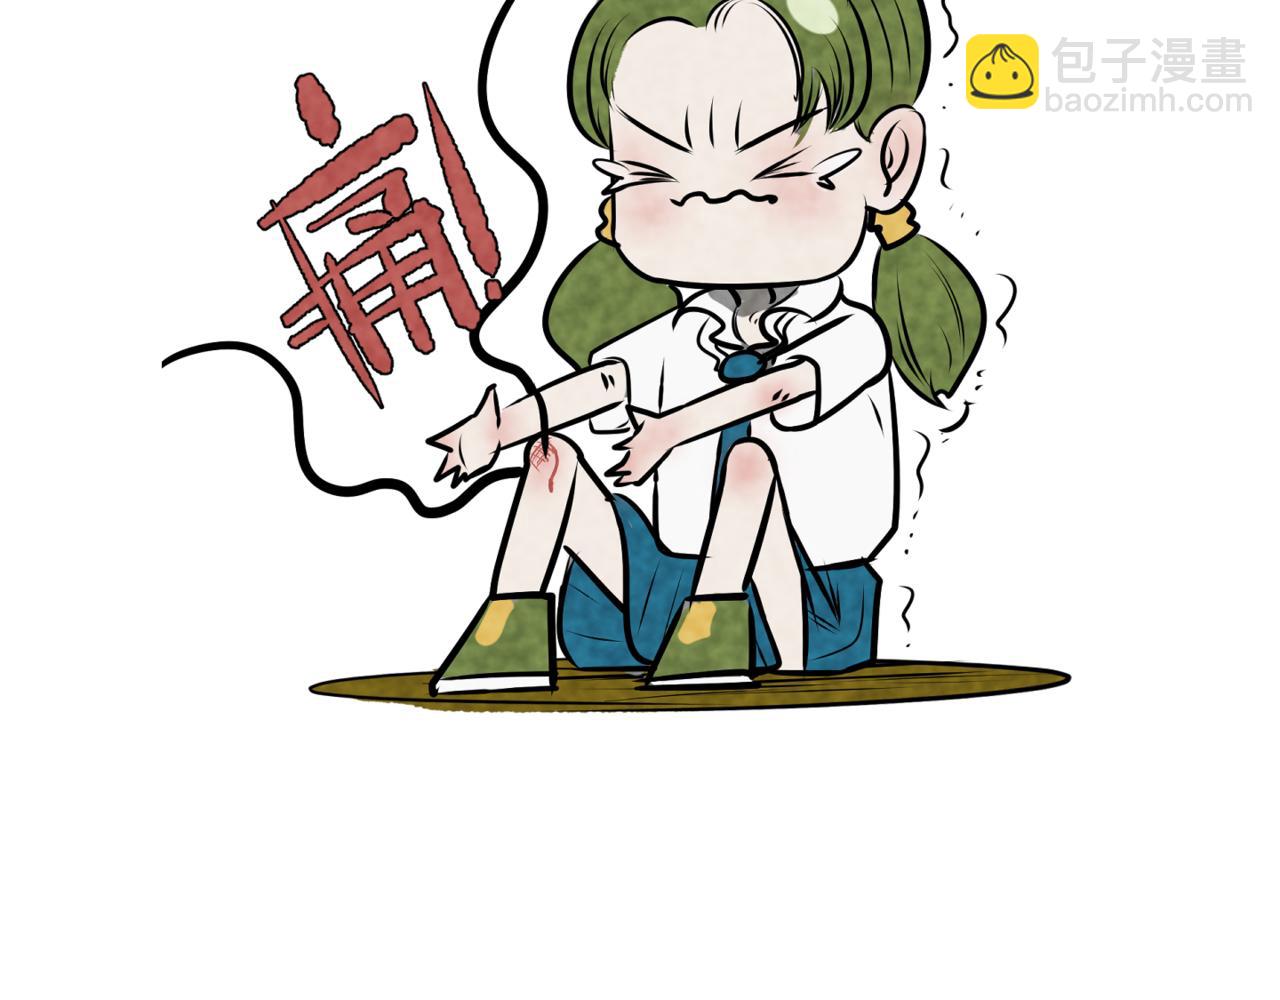 韓小草的漫畫日常 - 神仙 - 2